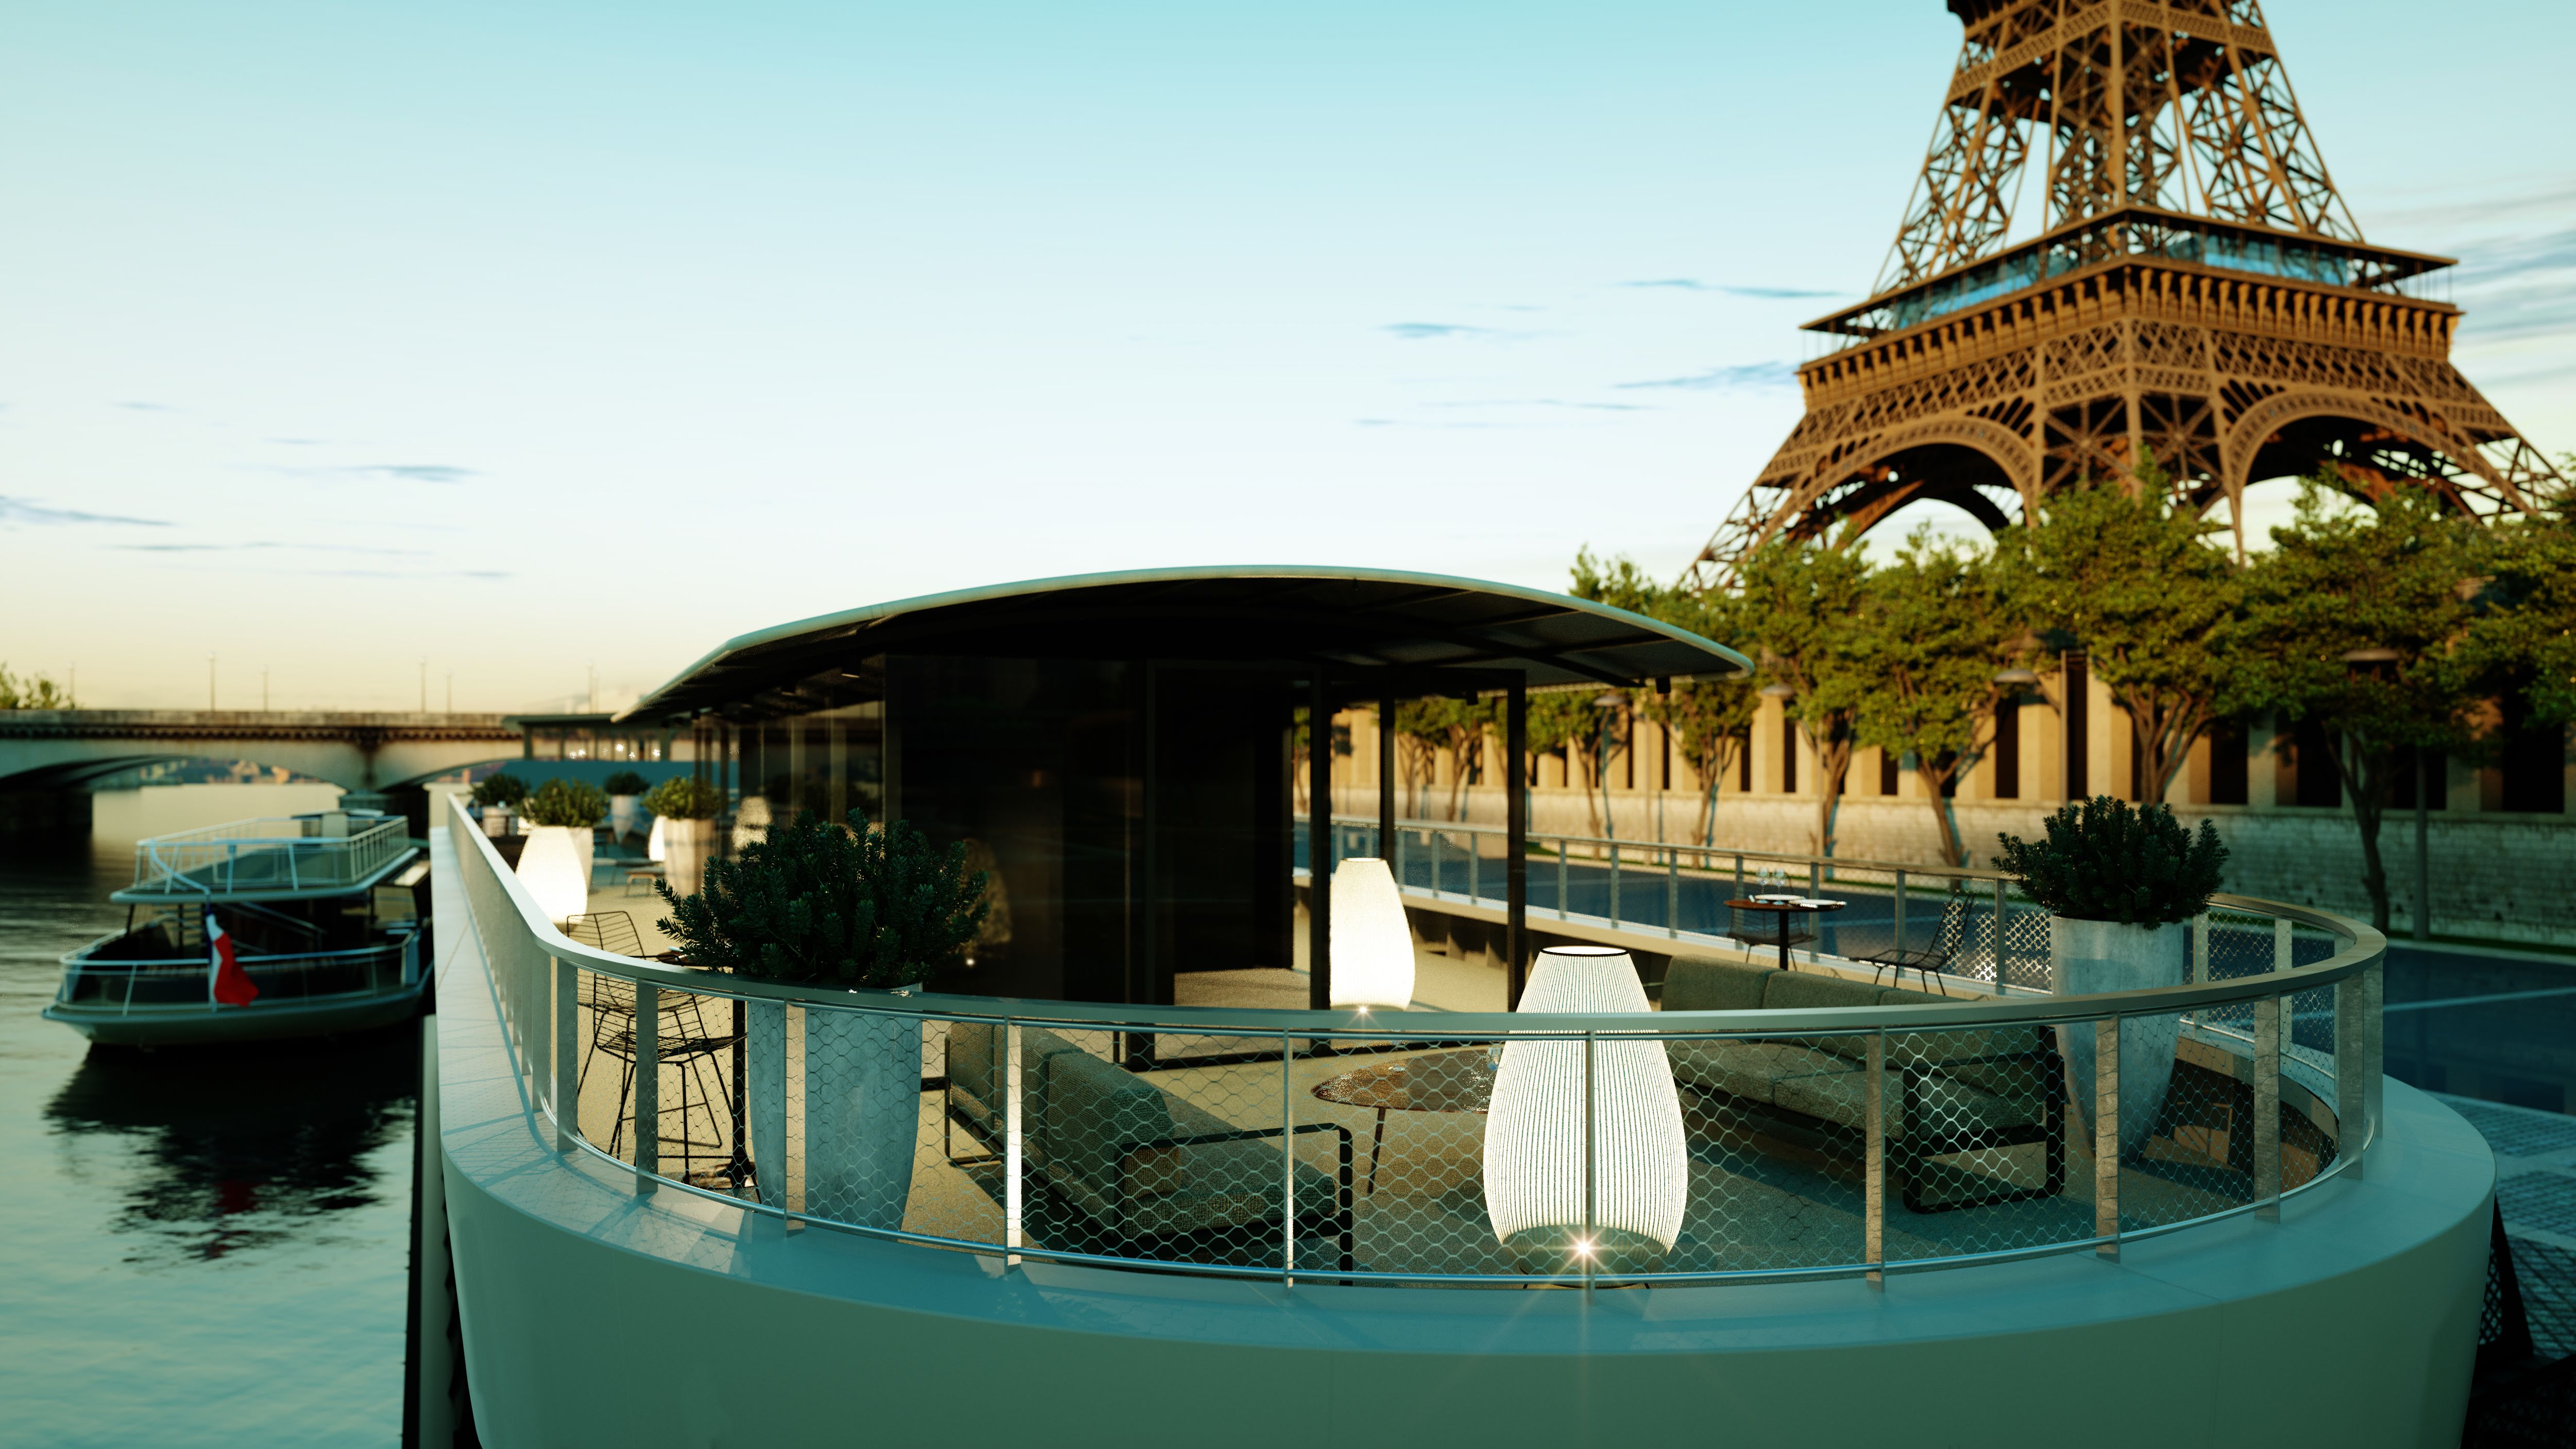 Vedettes de Paris – Offrez-vous le charme de la Seine dans nos espaces conviviales